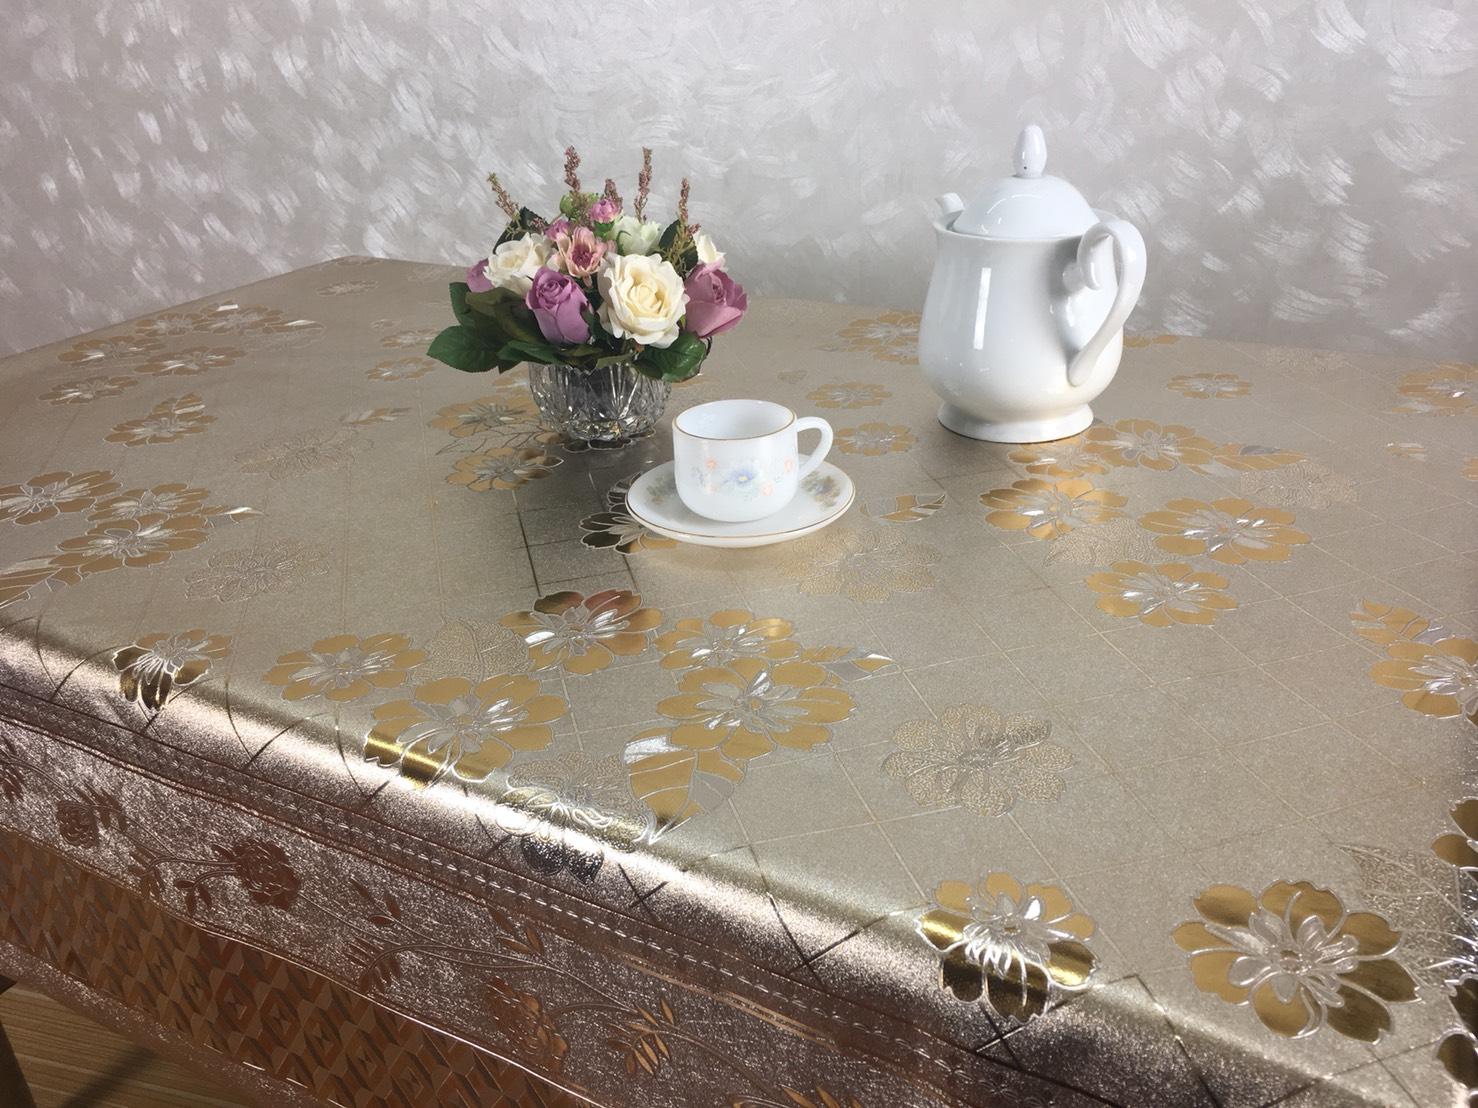 ผ้าปูโต๊ะ พลาสติกปูโต๊ะ ด้านหน้าเป็นพลาสติกPVC ด้านหลังเป็นผ้า(สปัน) ผืนยาว ลายดอกไม้บาน สีทอง (ขนาด 1.37 x 2.0 ม.)